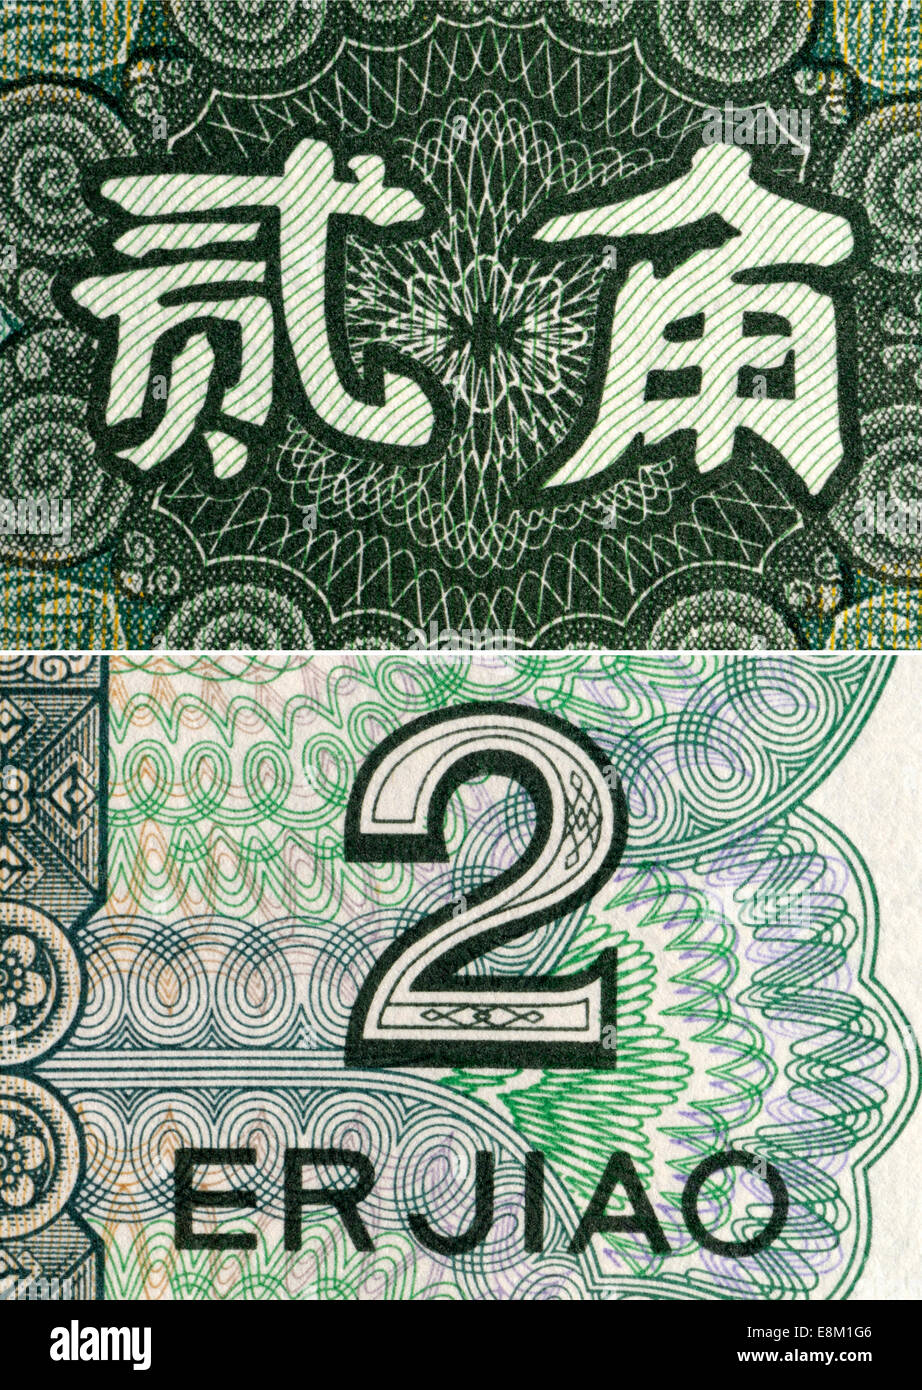 Ausschnitt aus einer chinesischen Banknote zeigt die Zeichen für "zwei Jiou" (Währungseinheit) Stockfoto